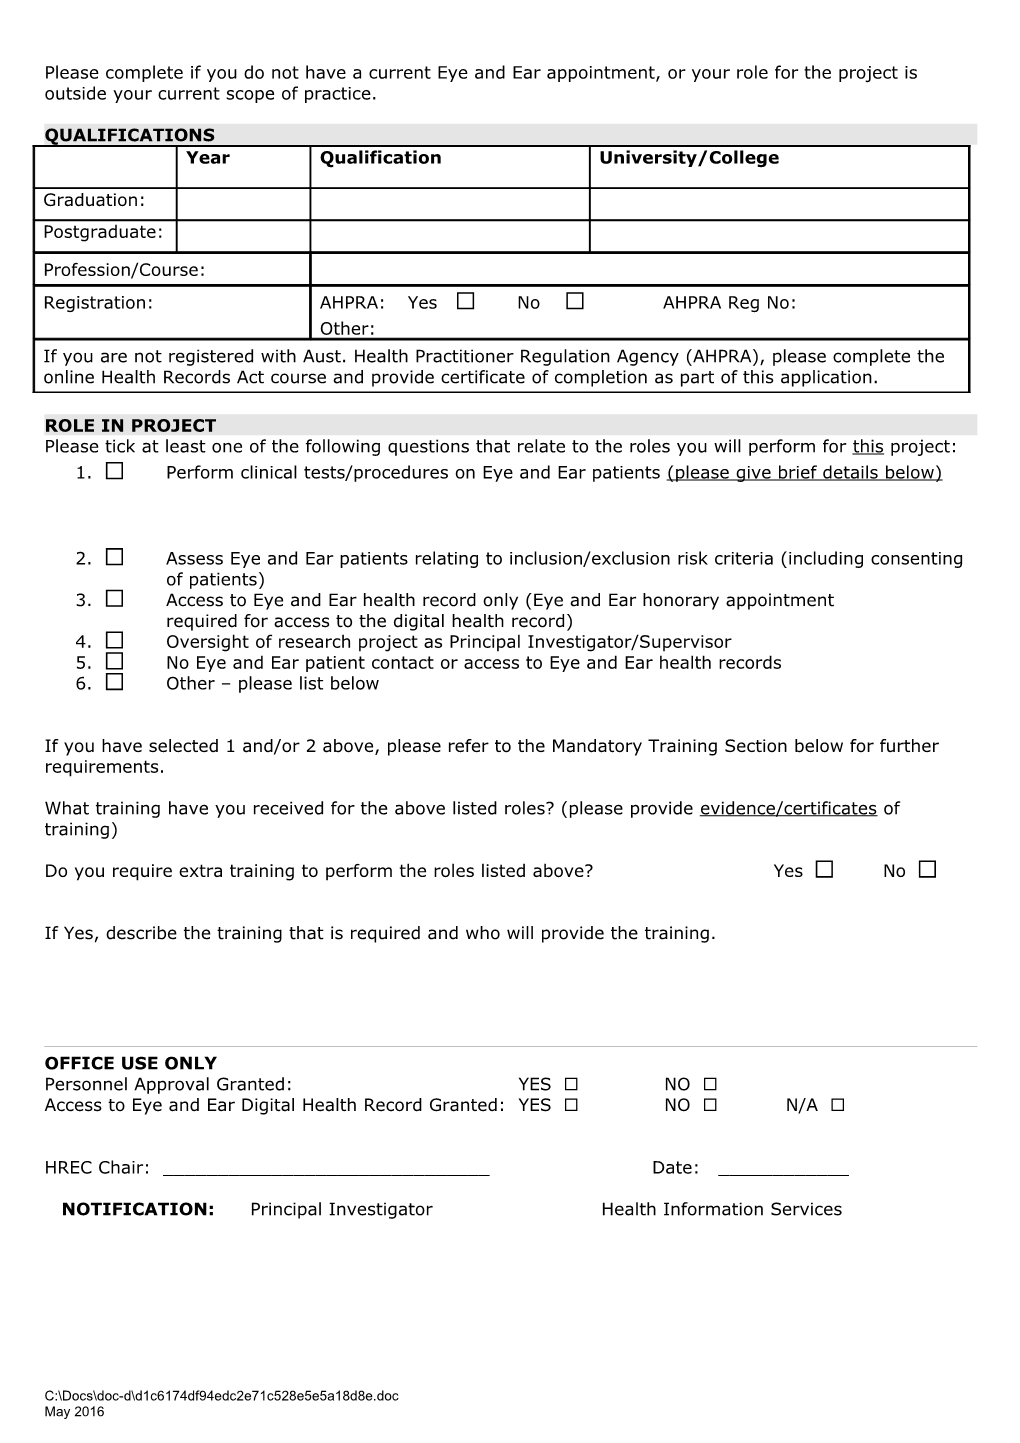 APPENDIX 1 Pjoect Personnel Detail Form